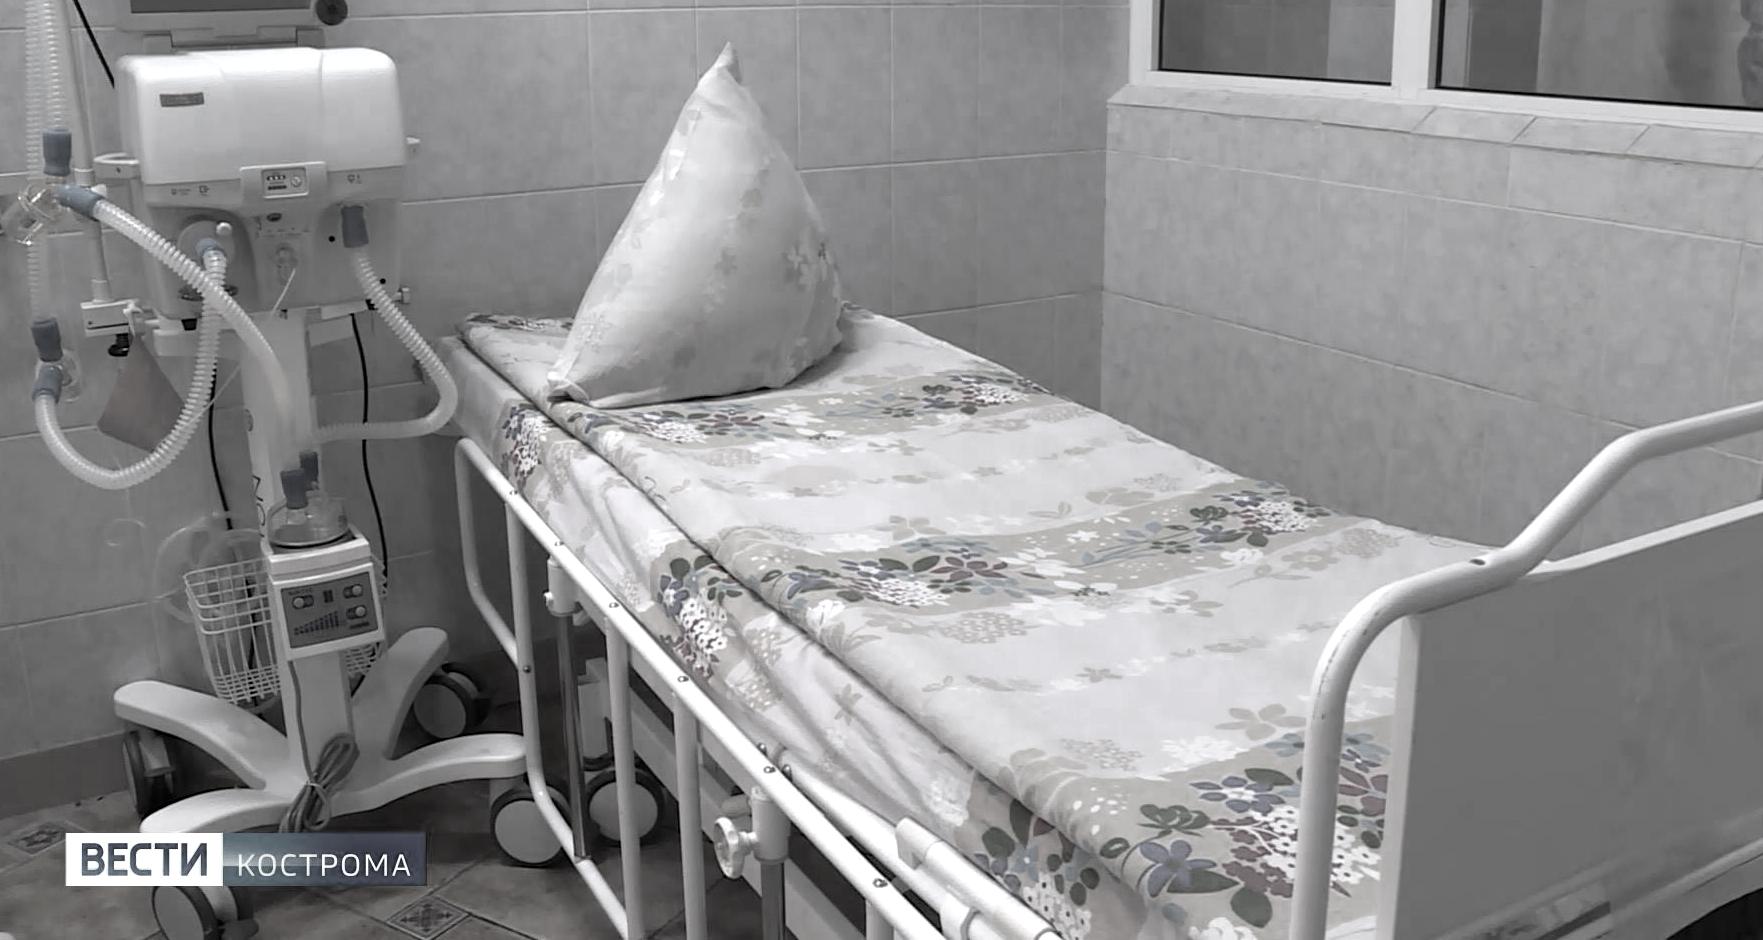 В Костроме скончался пожилой мужчина с коронавирусом